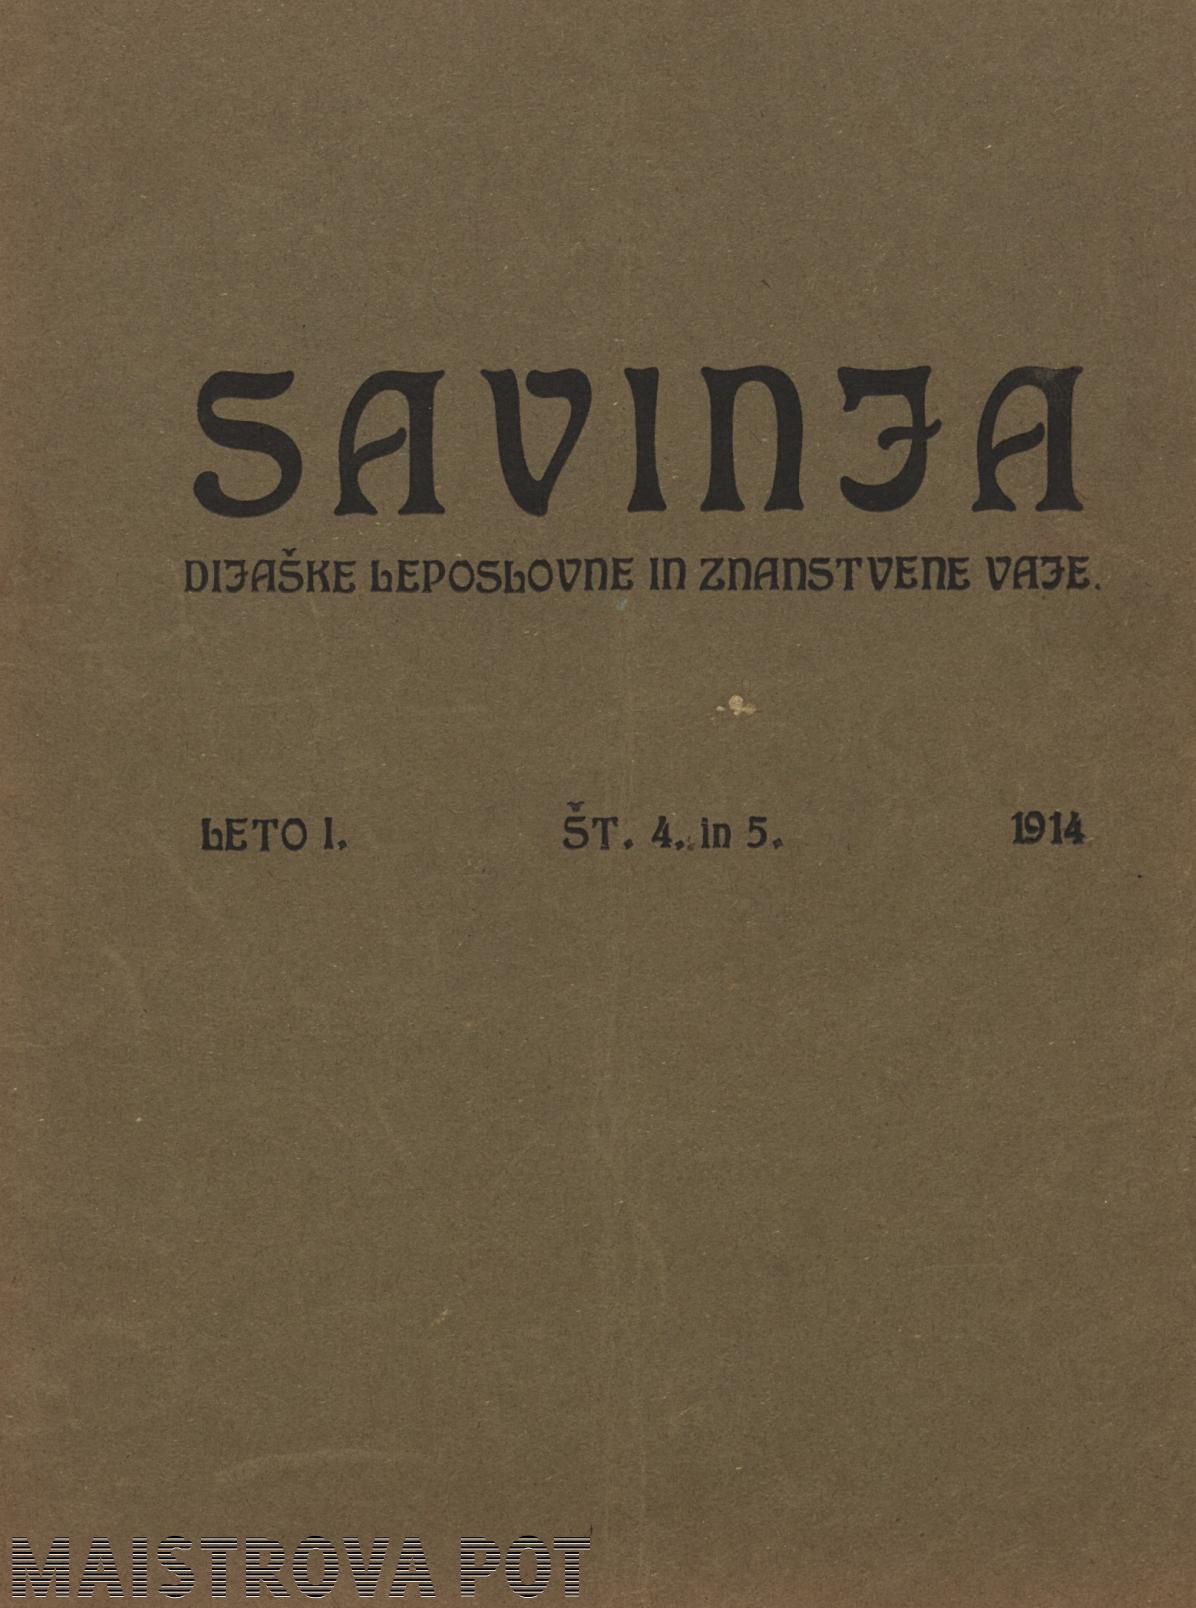 Literarni list Savinja